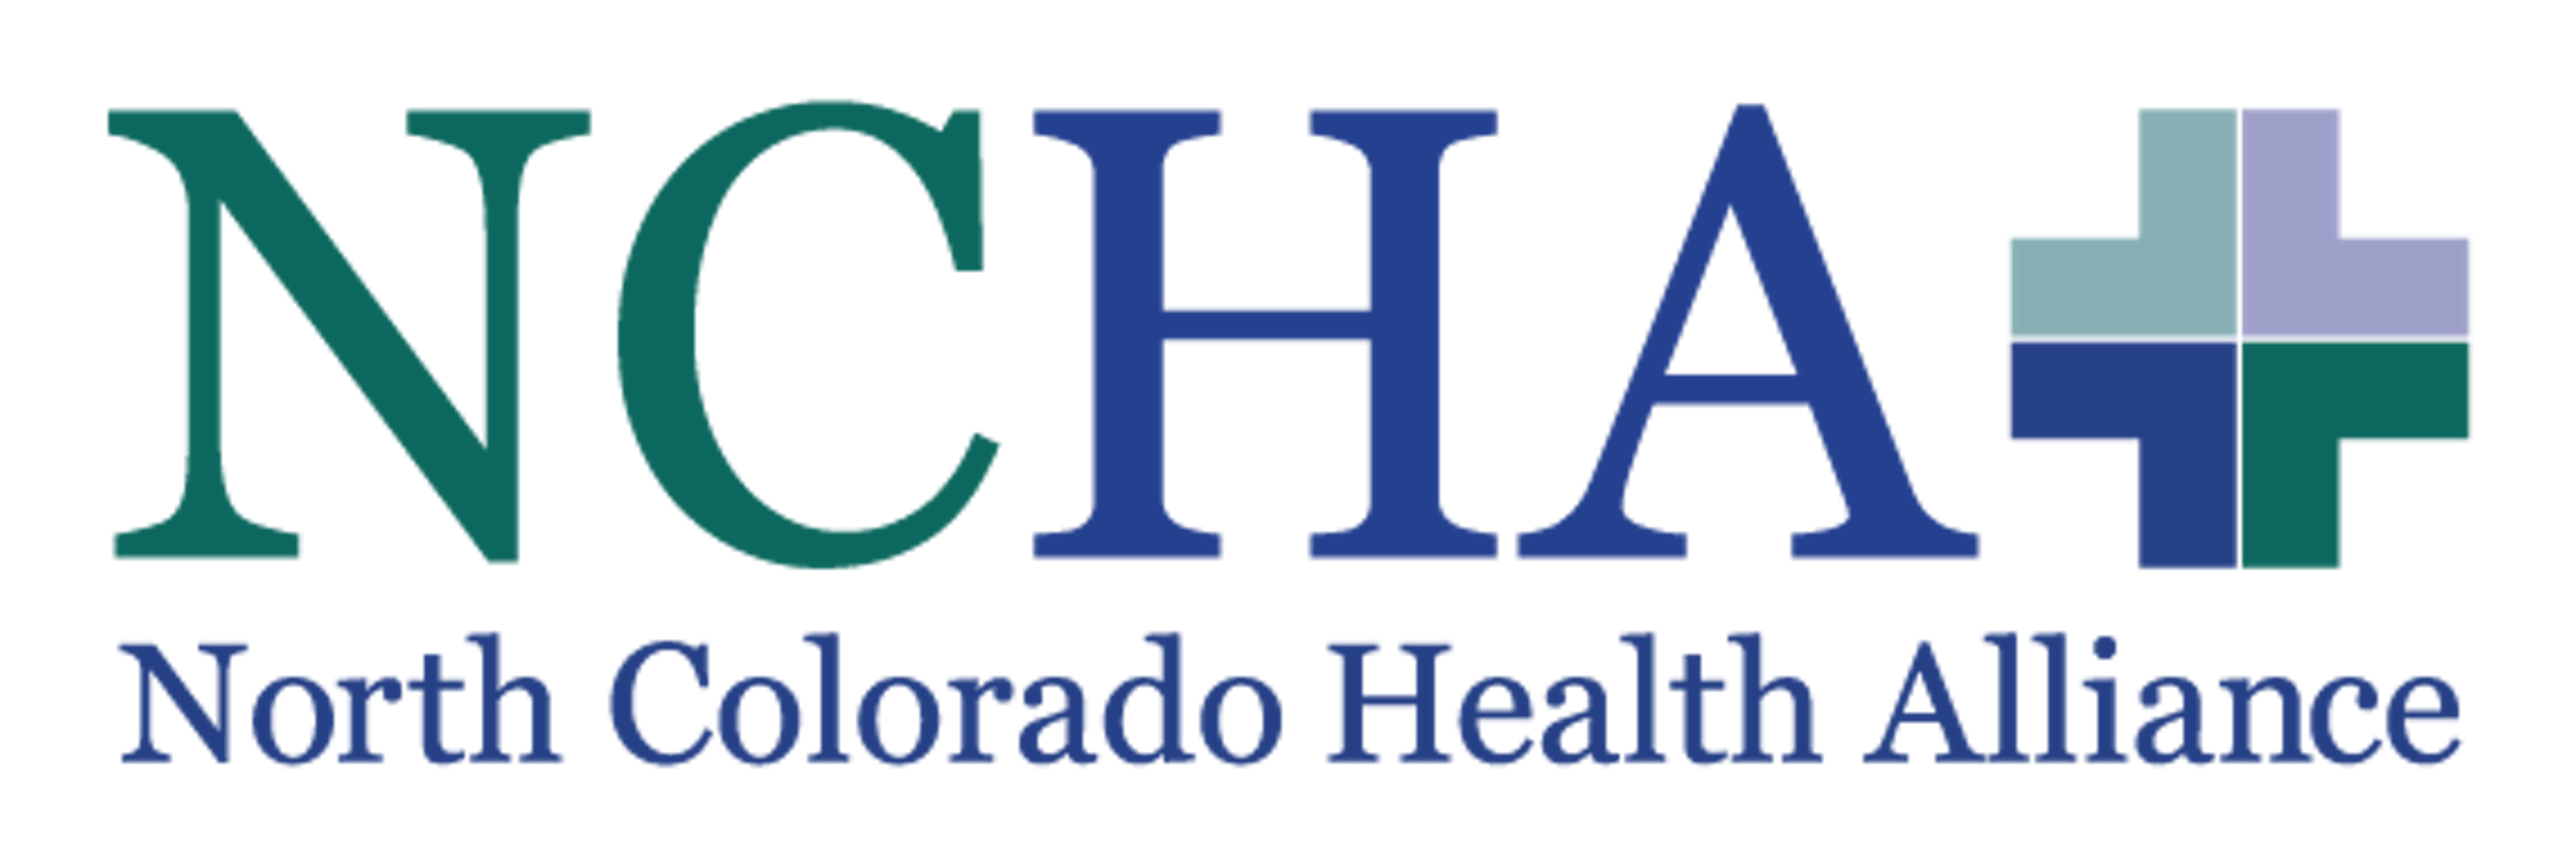 North Colorado Health Alliance logo